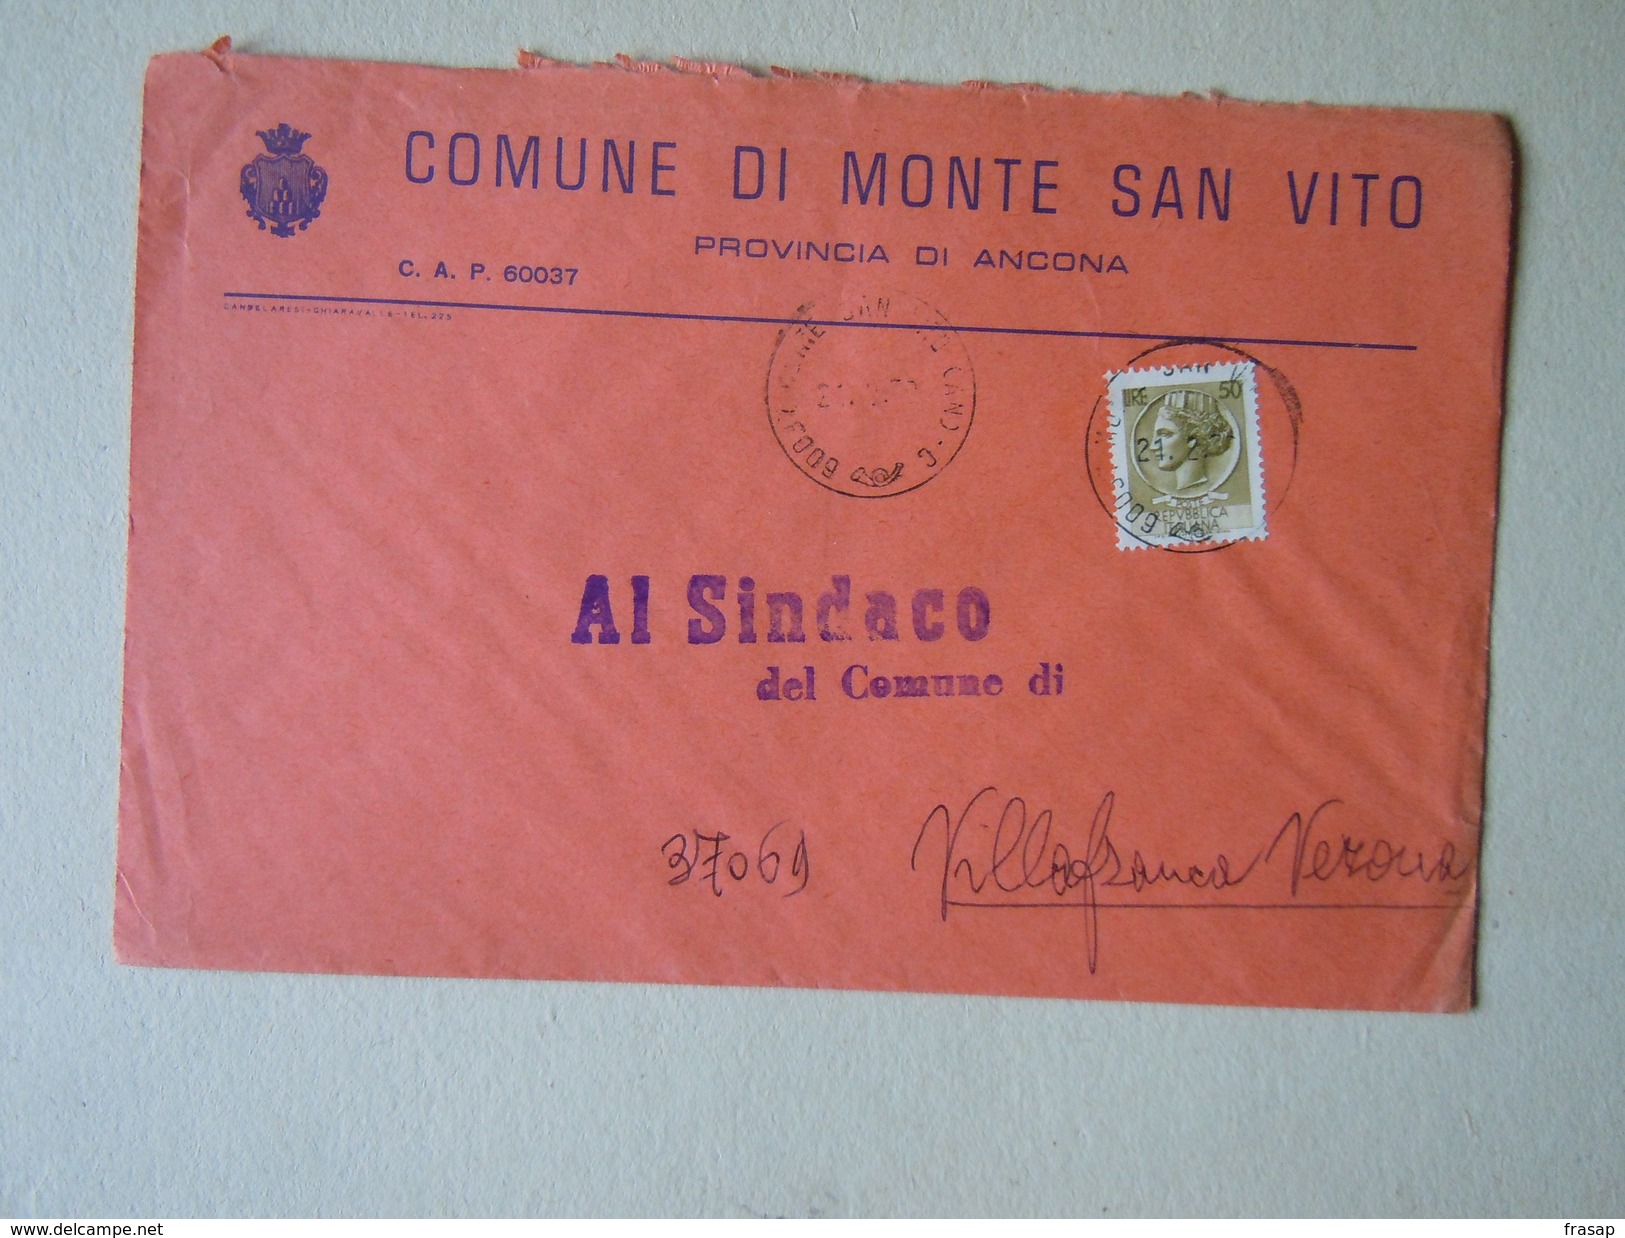 TEMATICA BUSTE COMUNALI - COMUNE DI MONTE SAN VITO   1969 - Buste